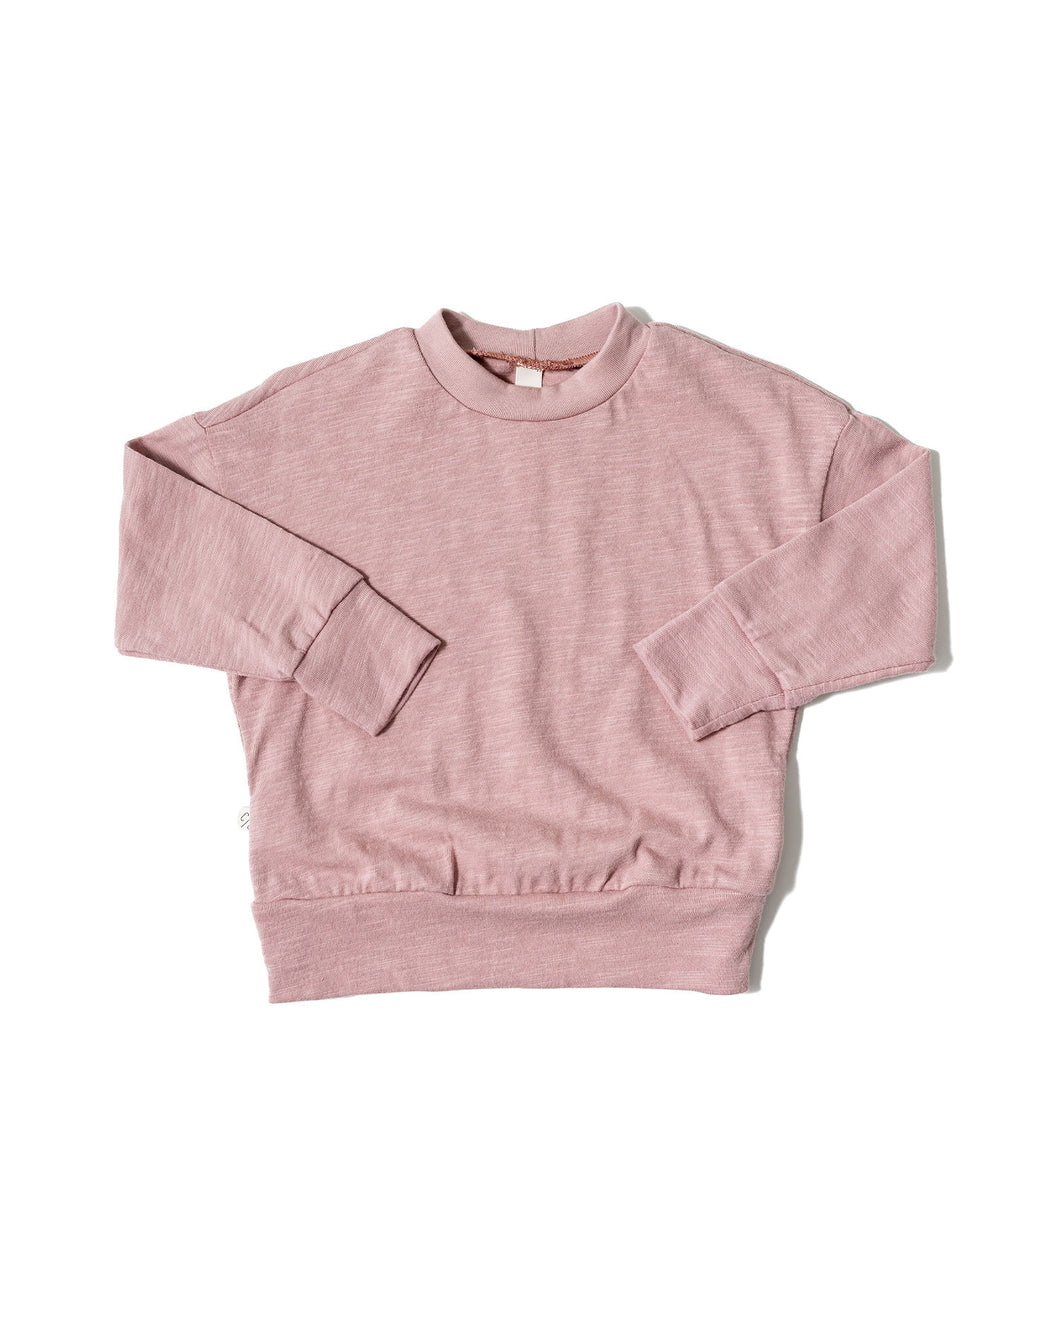 boxy sweatshirt - periwinkle